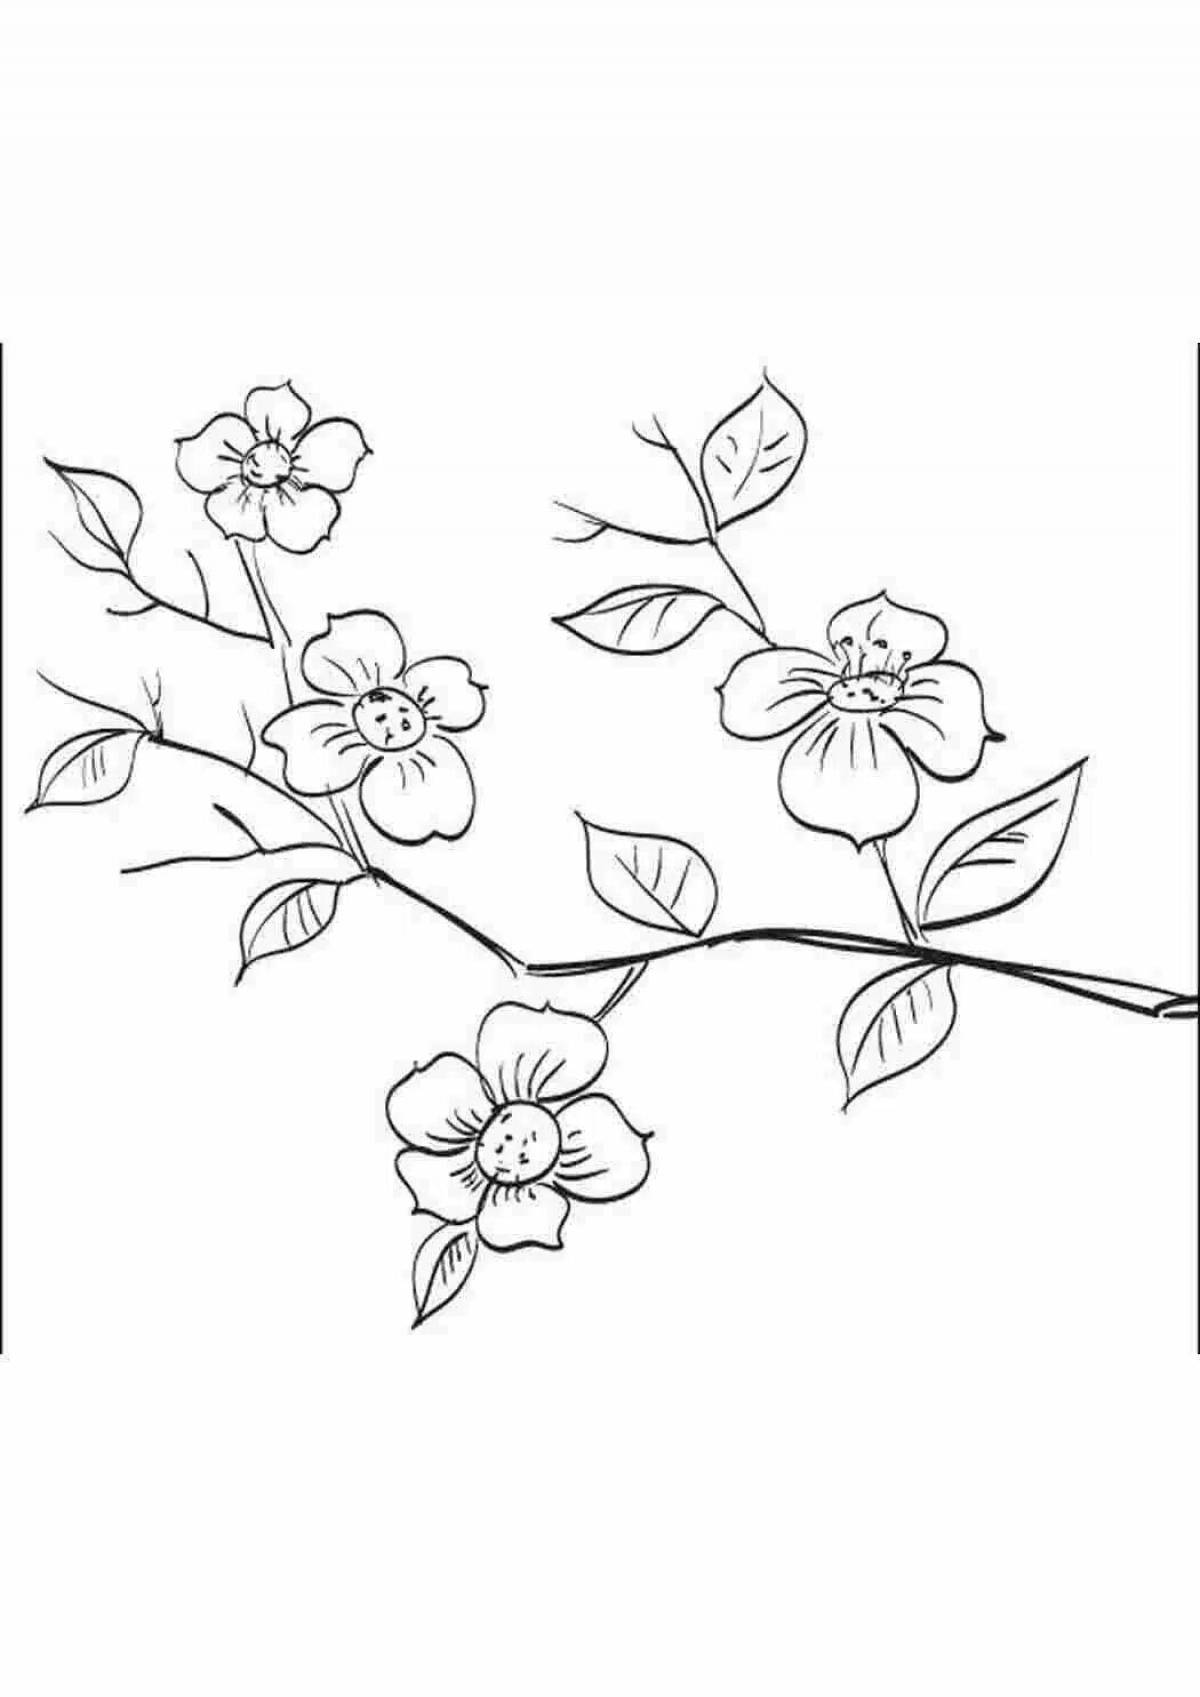 Sweet sakura branch coloring book for kids